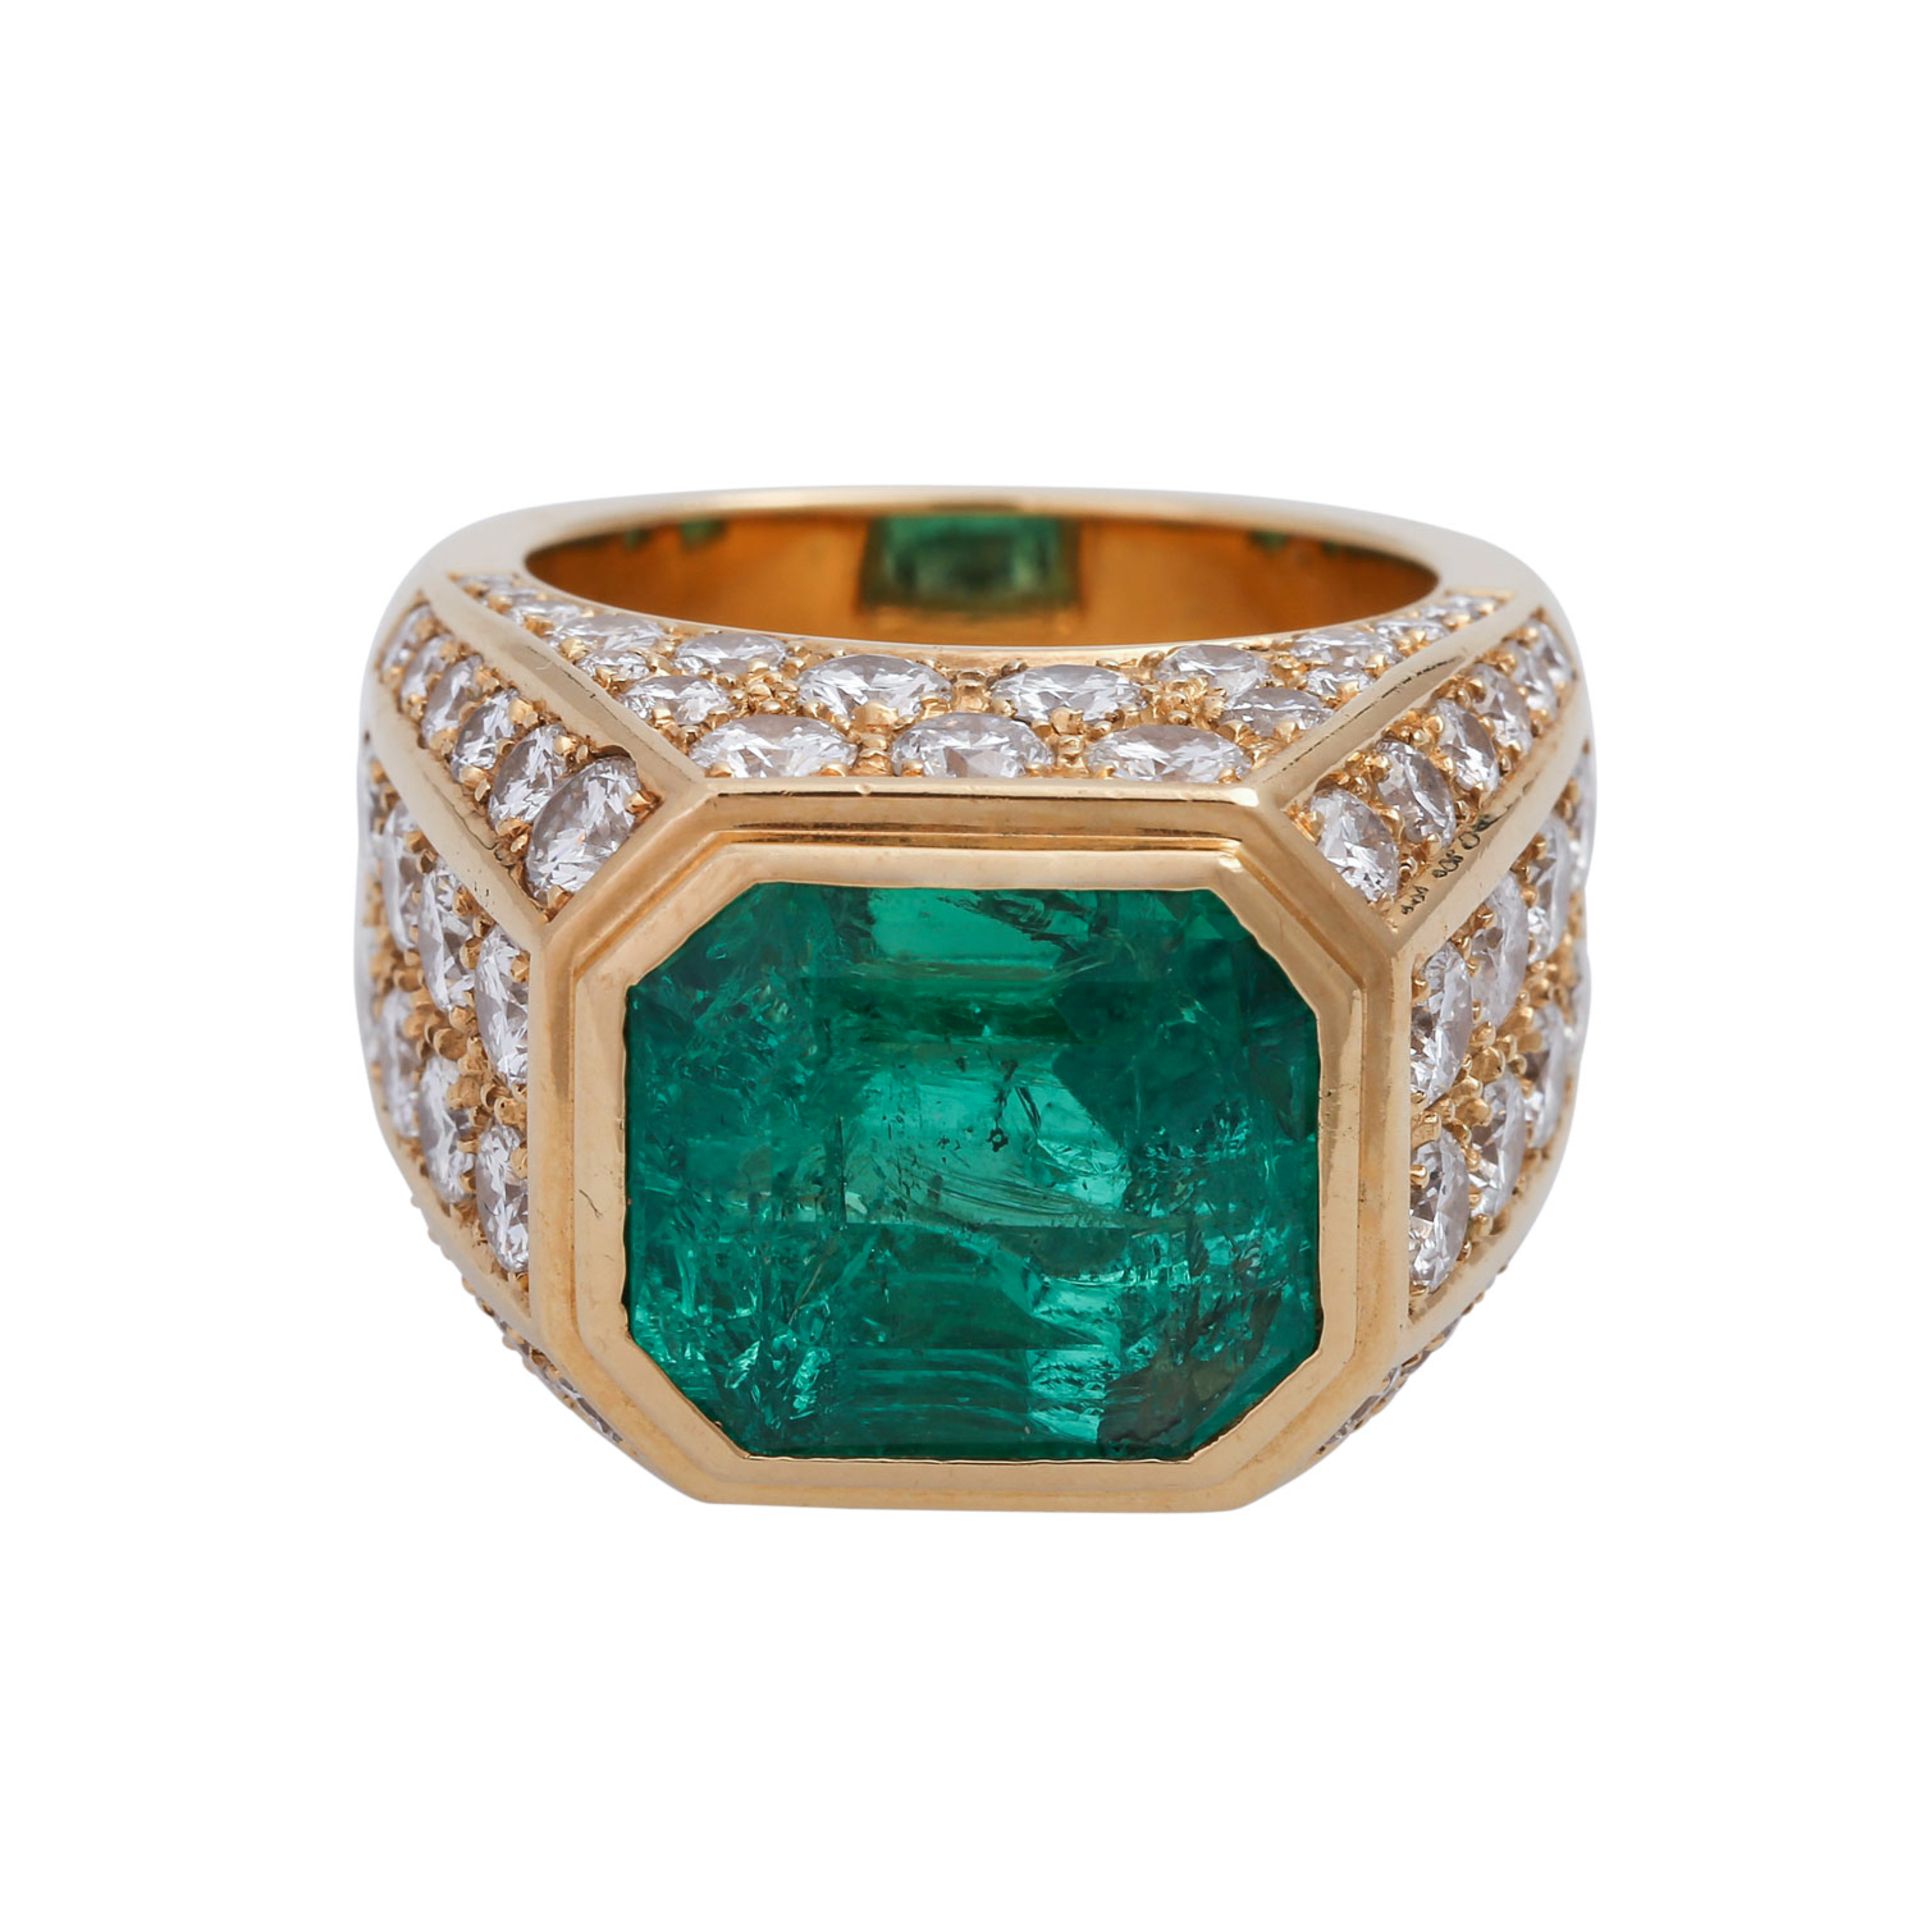 Ring mit Smaragd ca. 12 ct und Brillantenzus. ca. 5 ct WEIß-LGW (H-J)/VS-SI2, GG 18K. RW: ca. 56.